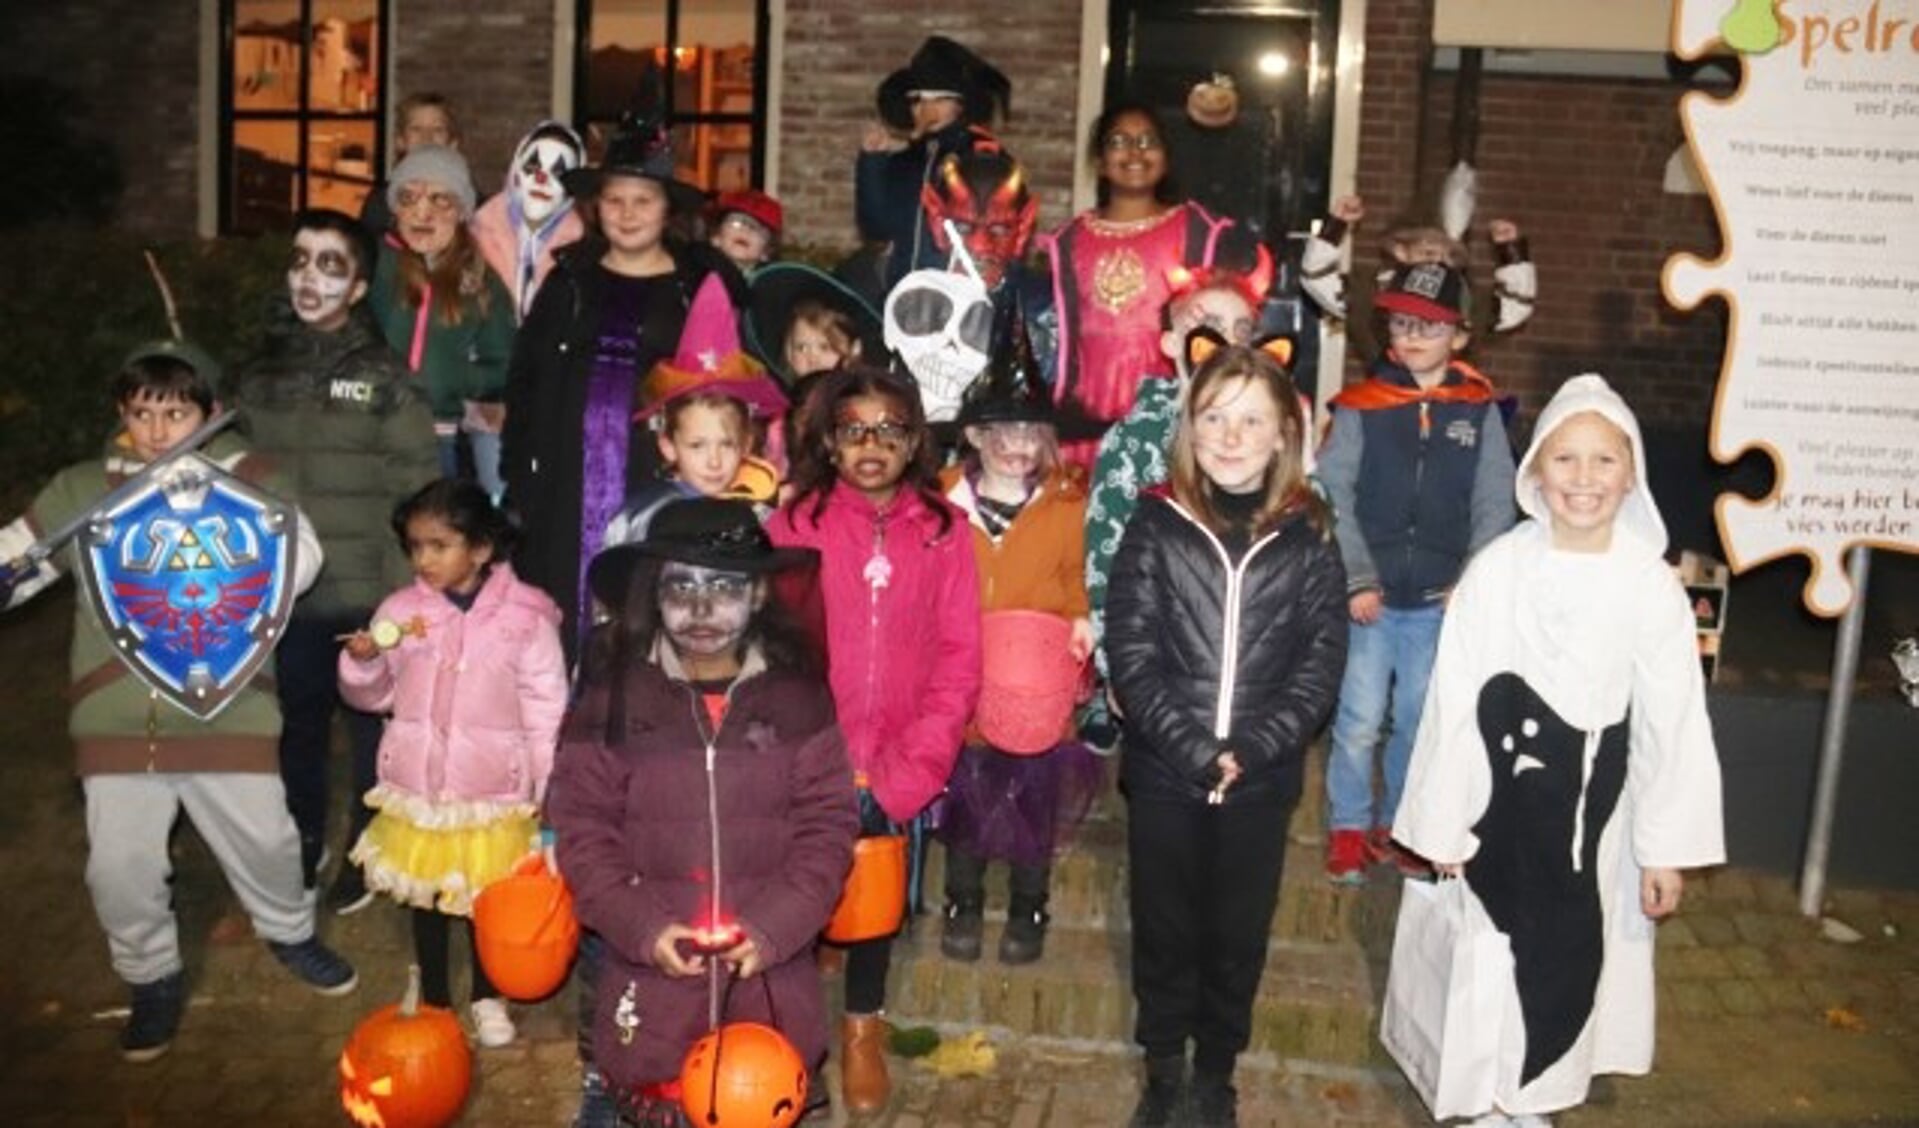 Het werd een echte Halloweenoptocht voor de jeugd in wijk Voorkoop te Culemborg